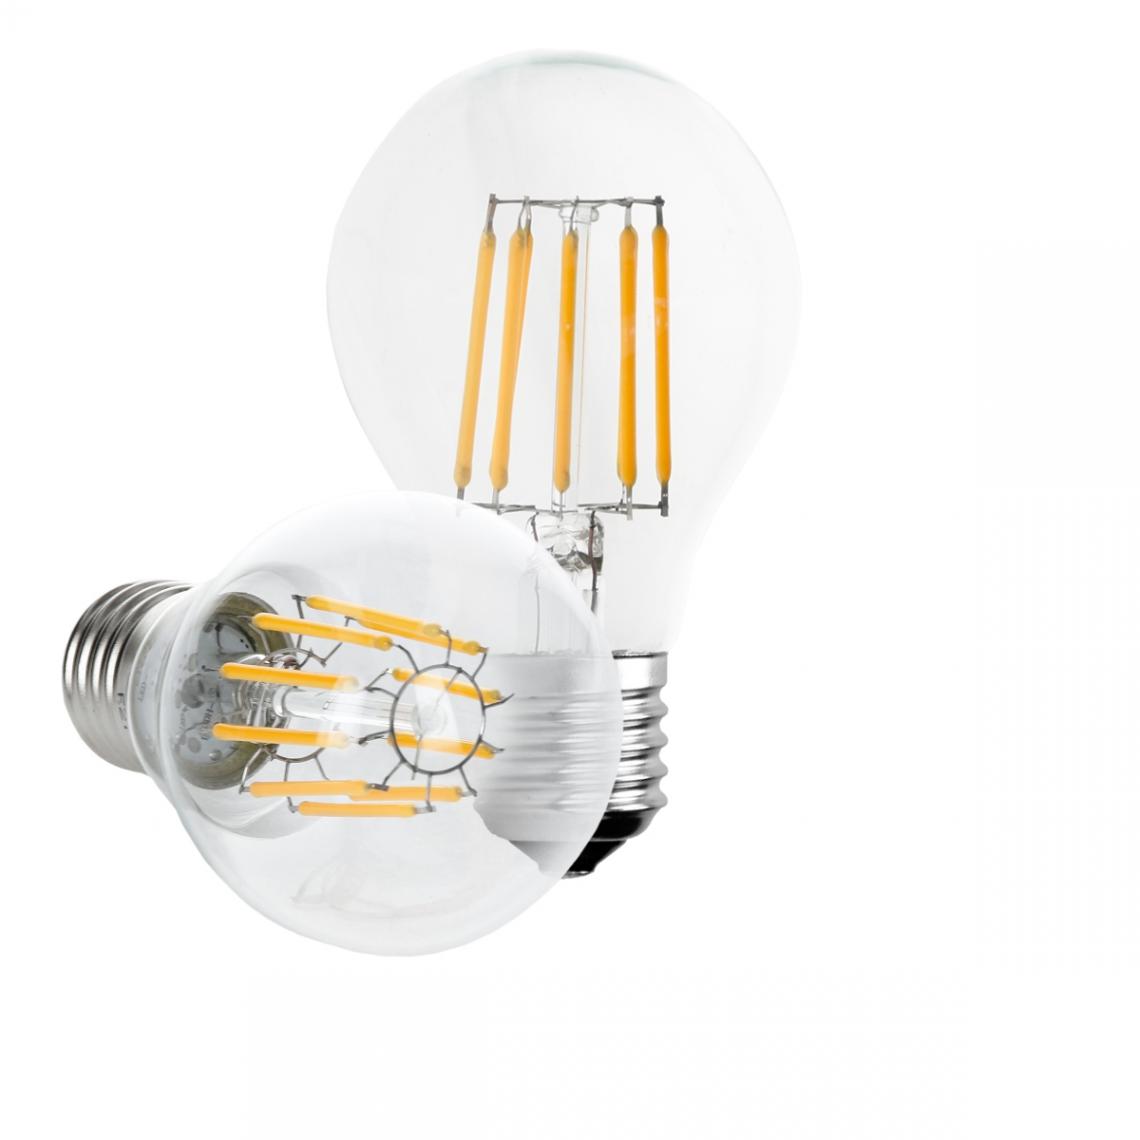 Ecd Germany - 5 x ampoule LED à filament E27 10W blanc chaud - Ampoules LED